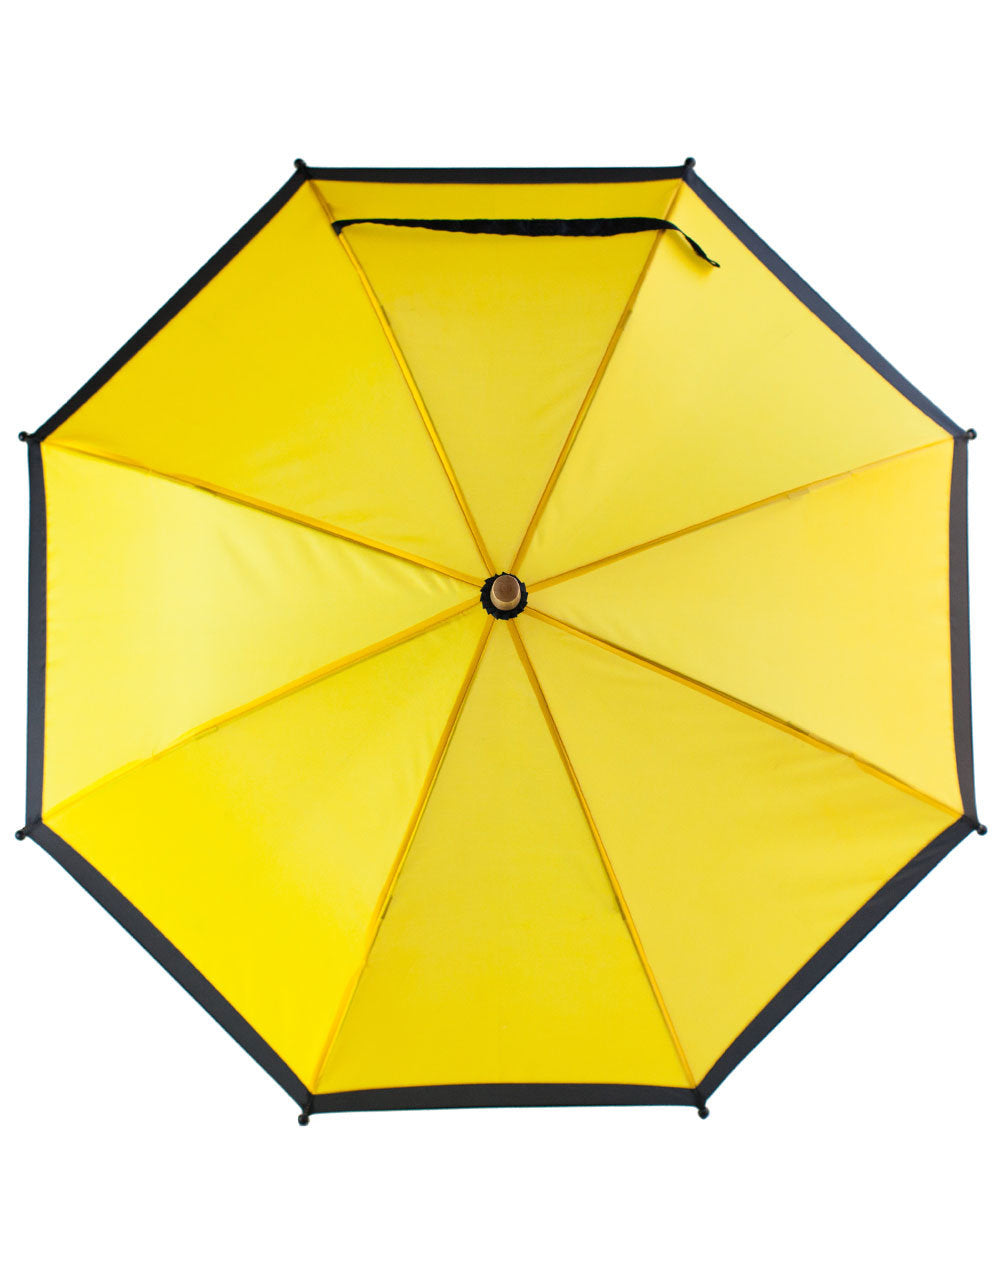 Oakiwear Kids Childrens Youth Folding Umbrella, Yellow